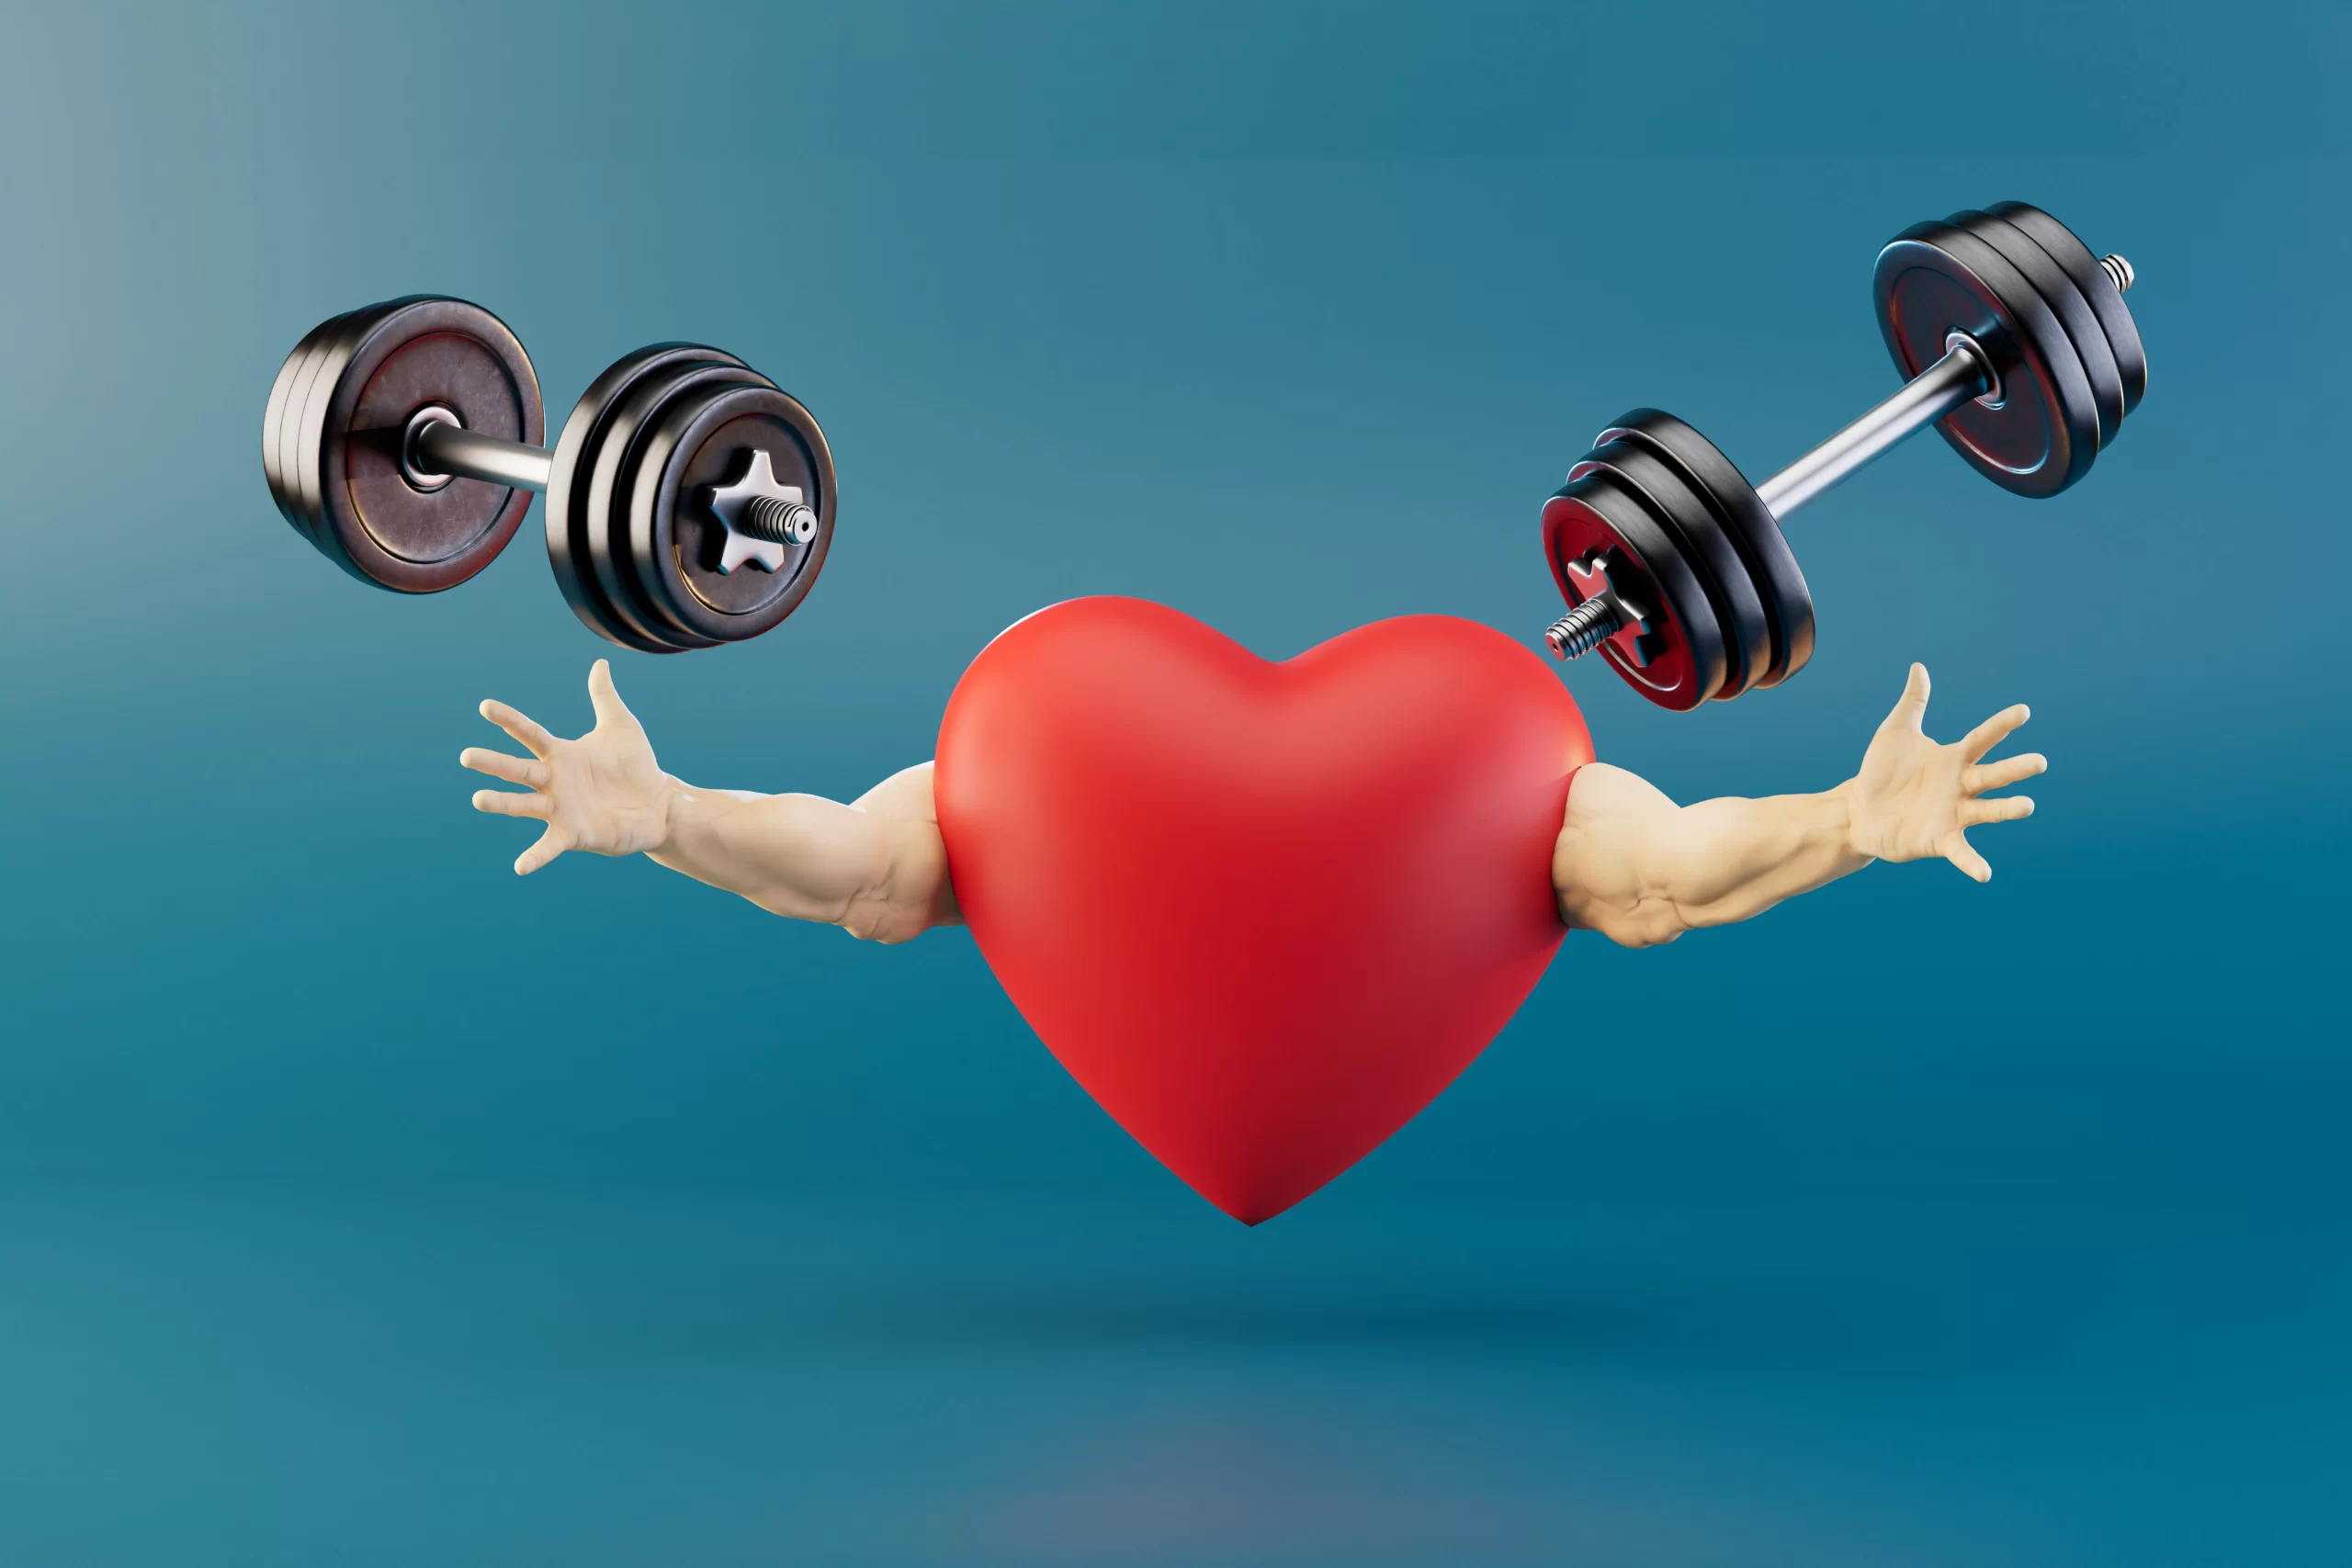 Best Exercises for Heart Health